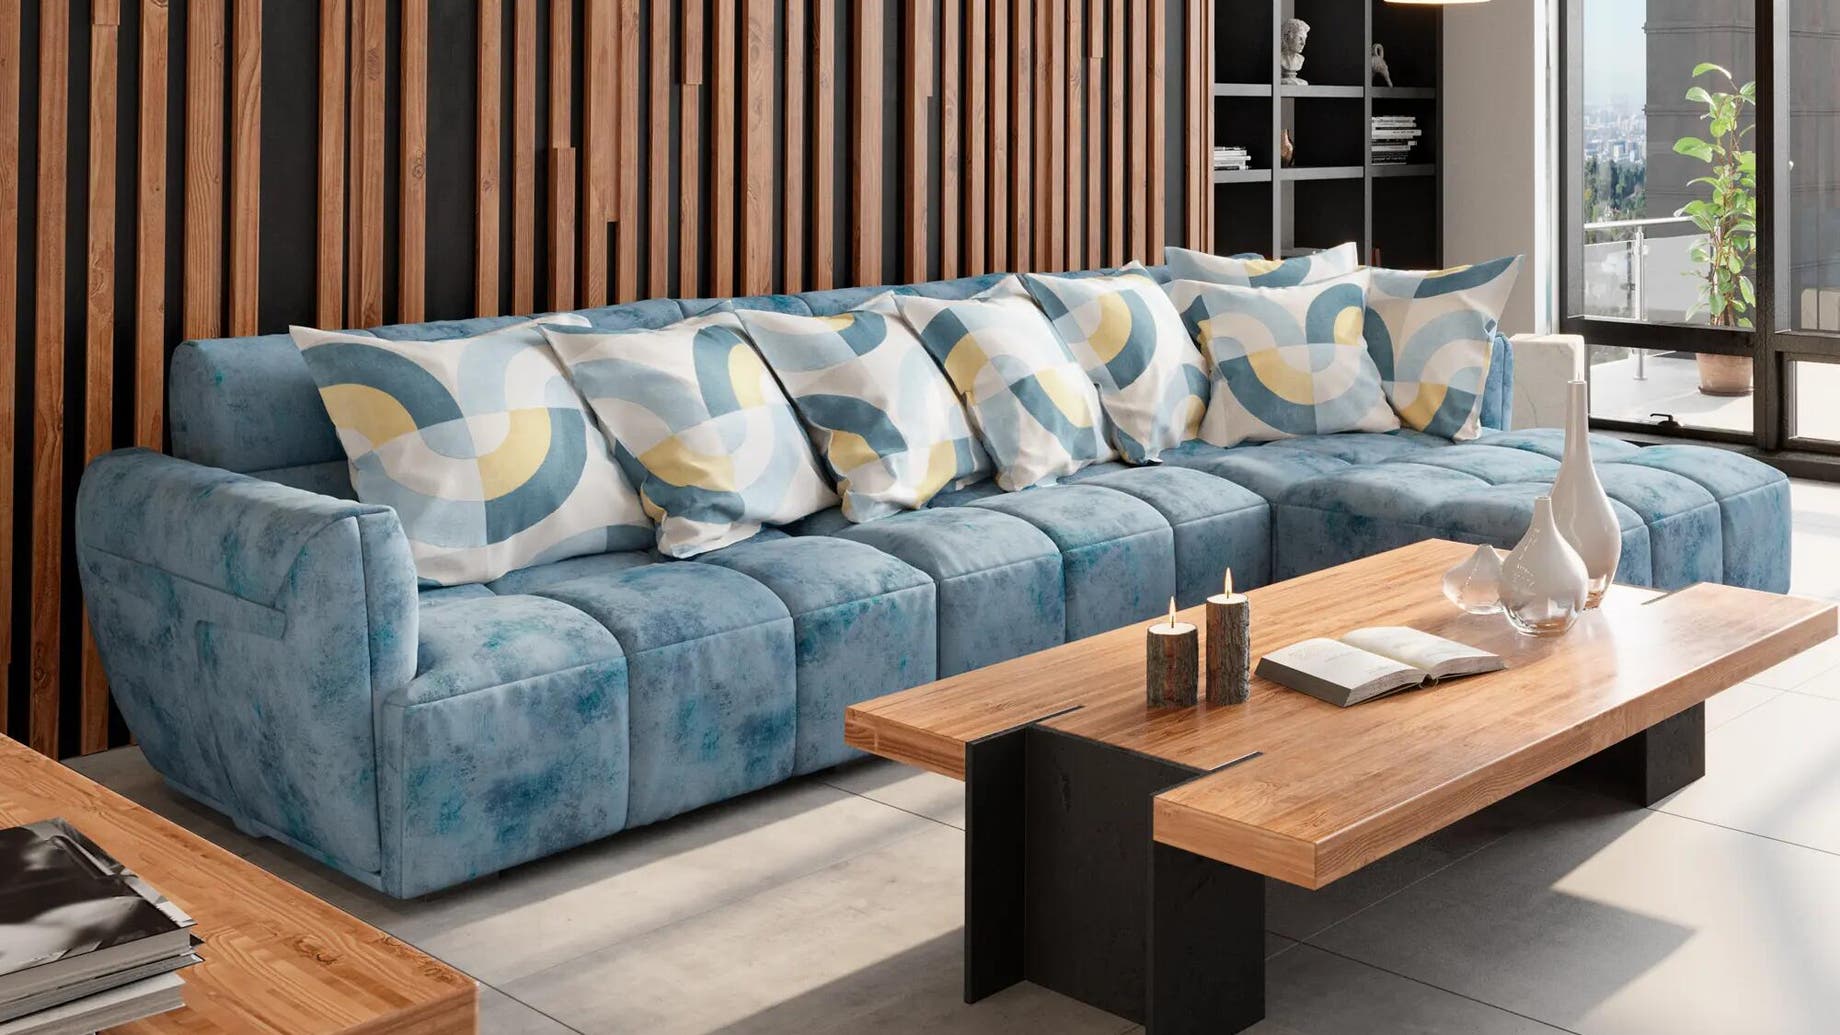 Mesas de madera de apoyo para el sillón  Diy sofa, Diy home decor  projects, Cool couches